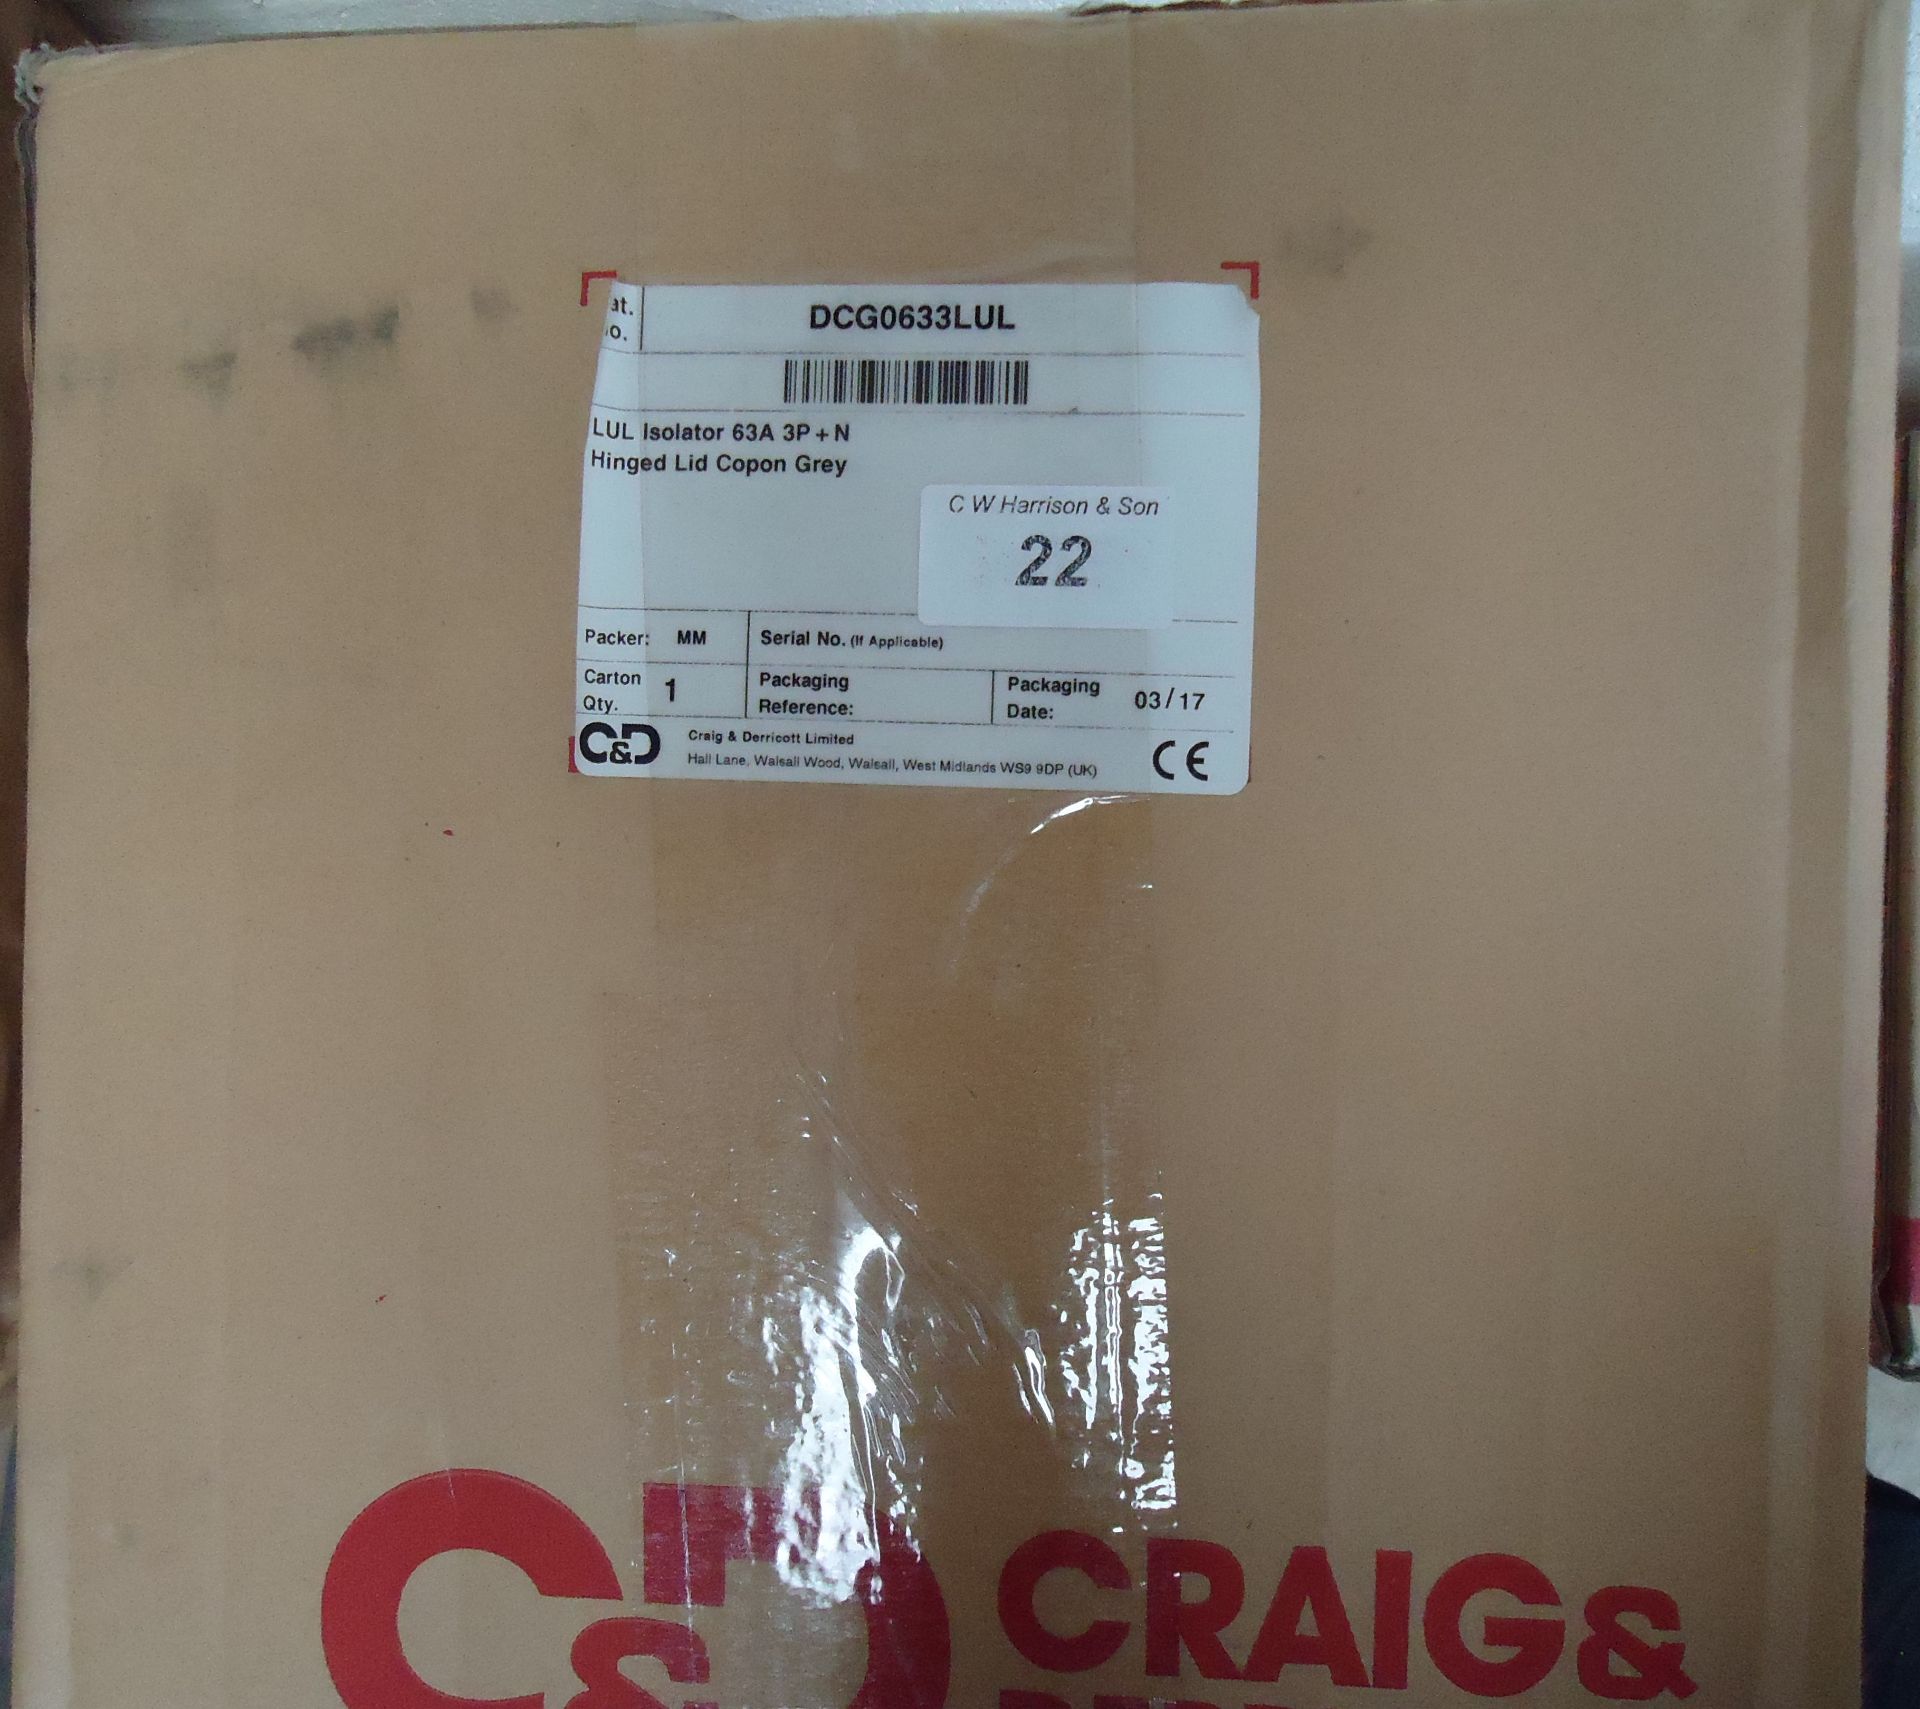 1 x Craig & Derricot 63A Isolator 3 P+N